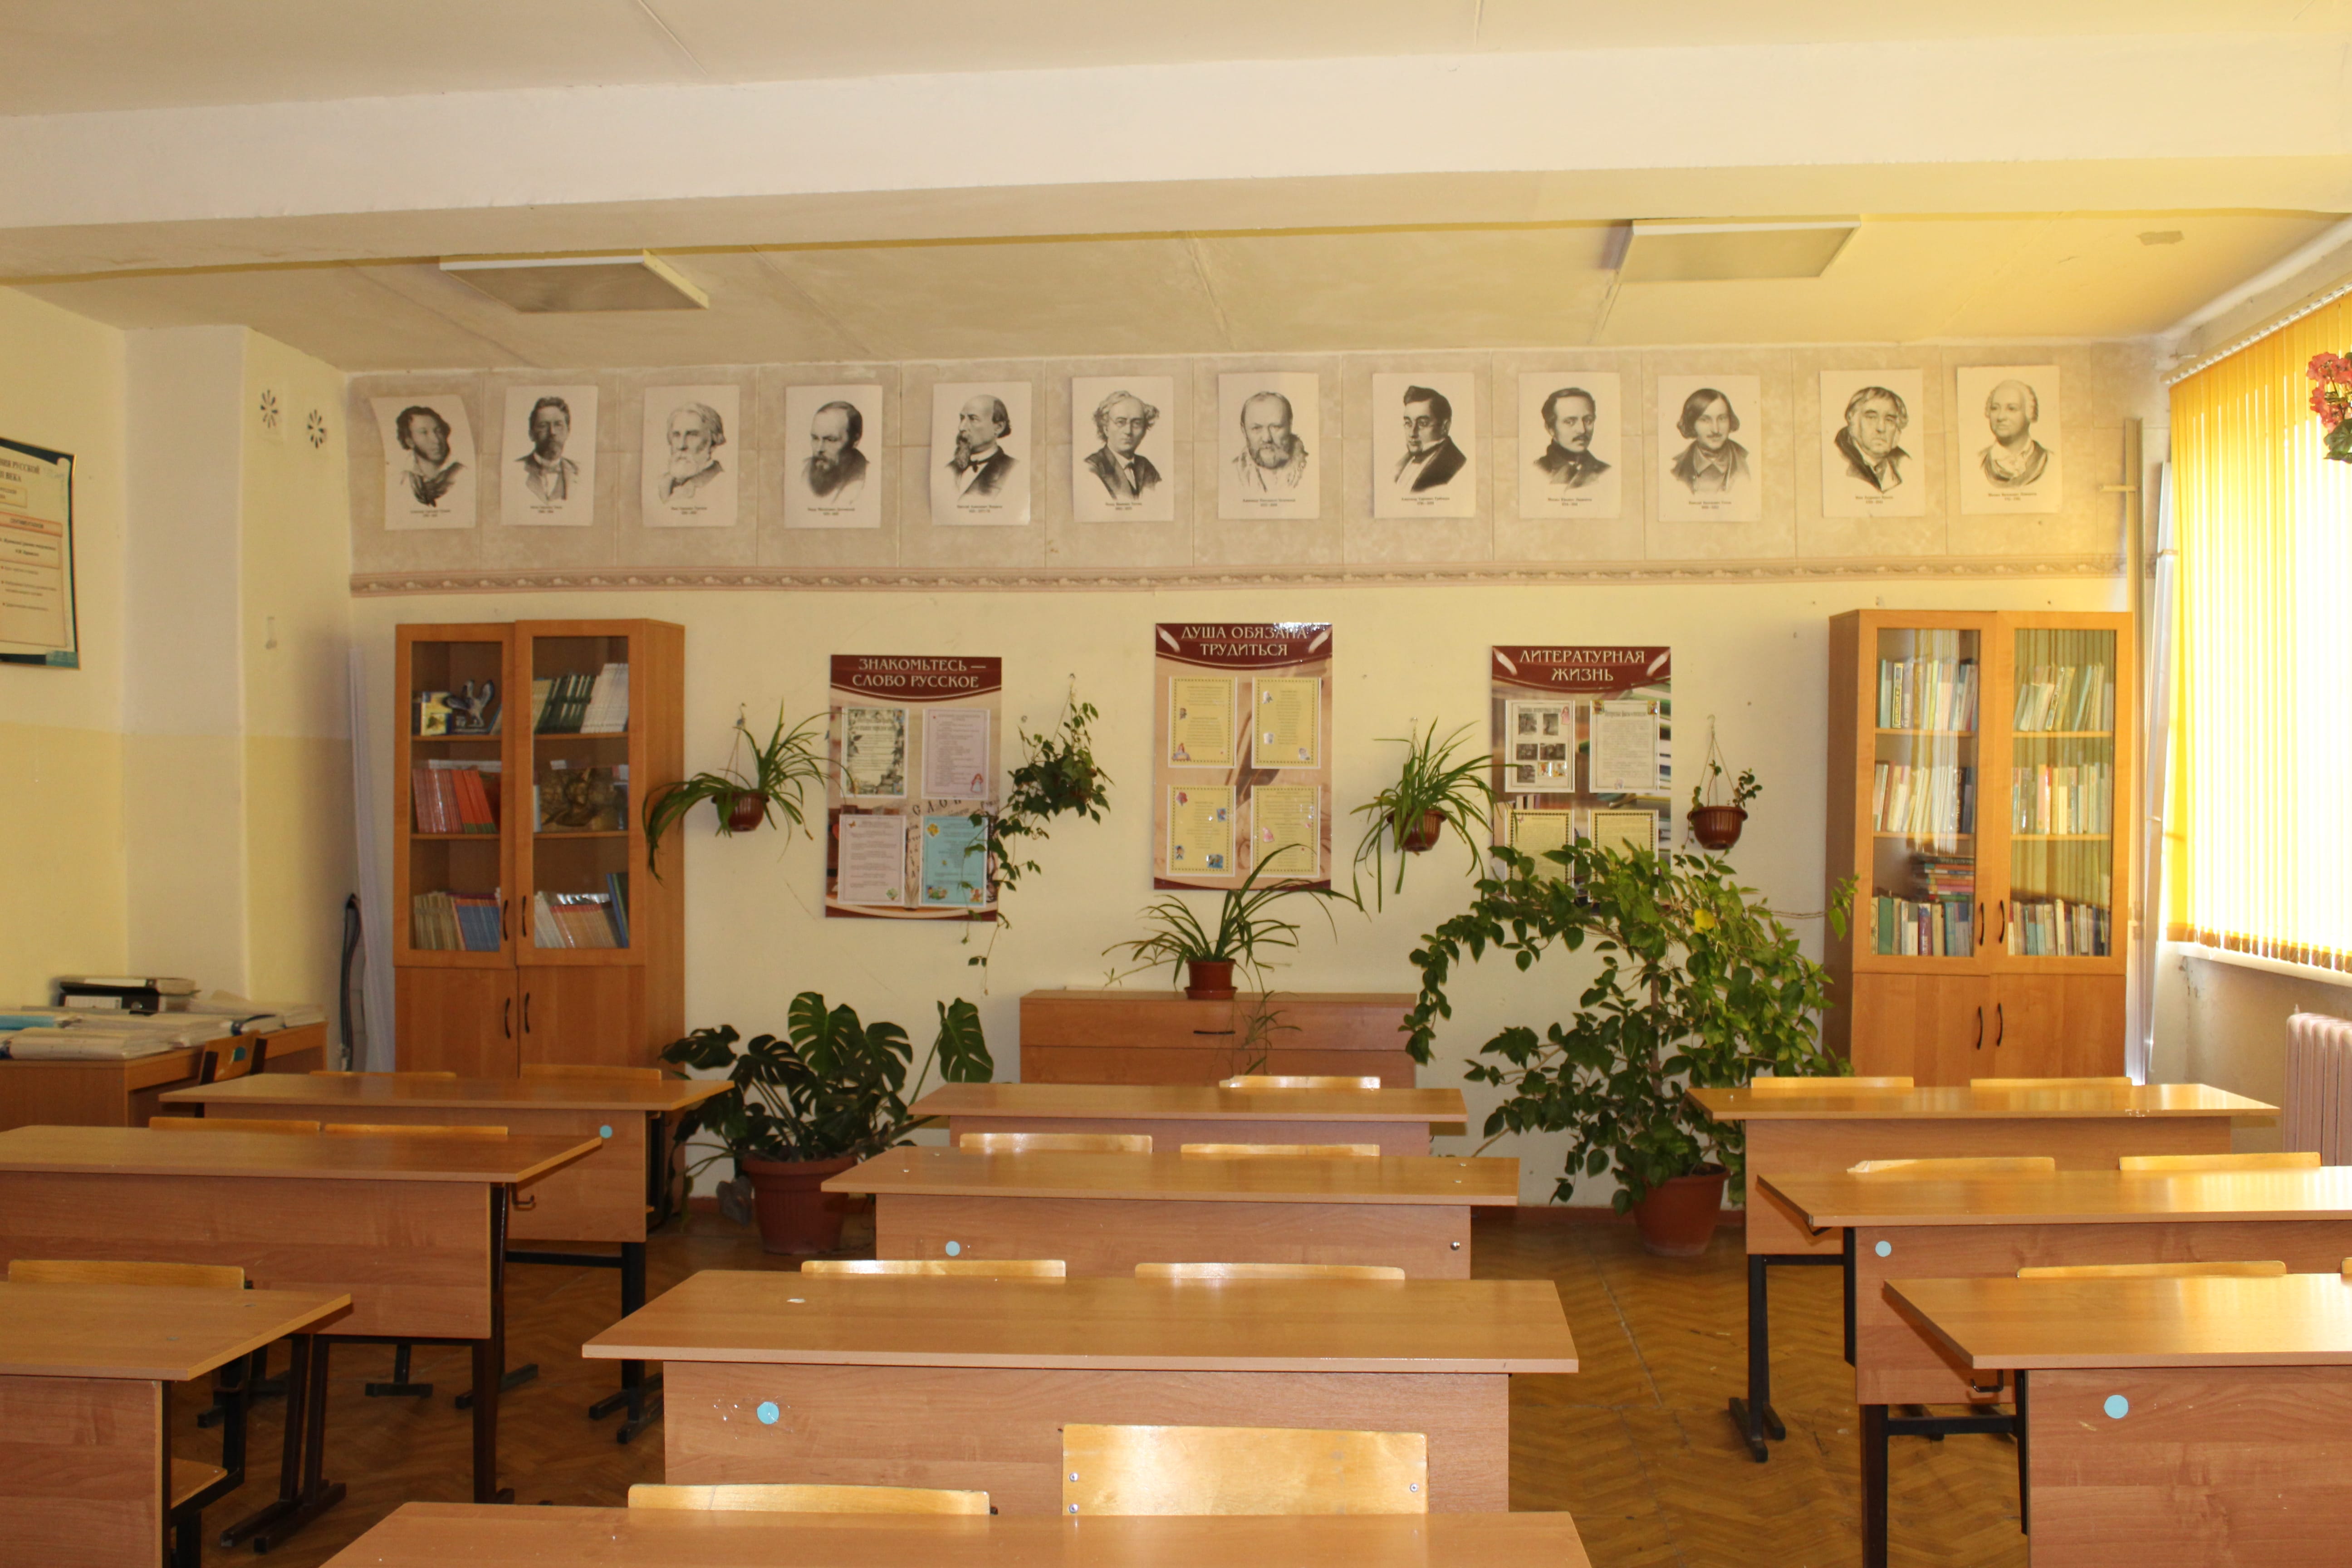 фотографии кабинетов школы